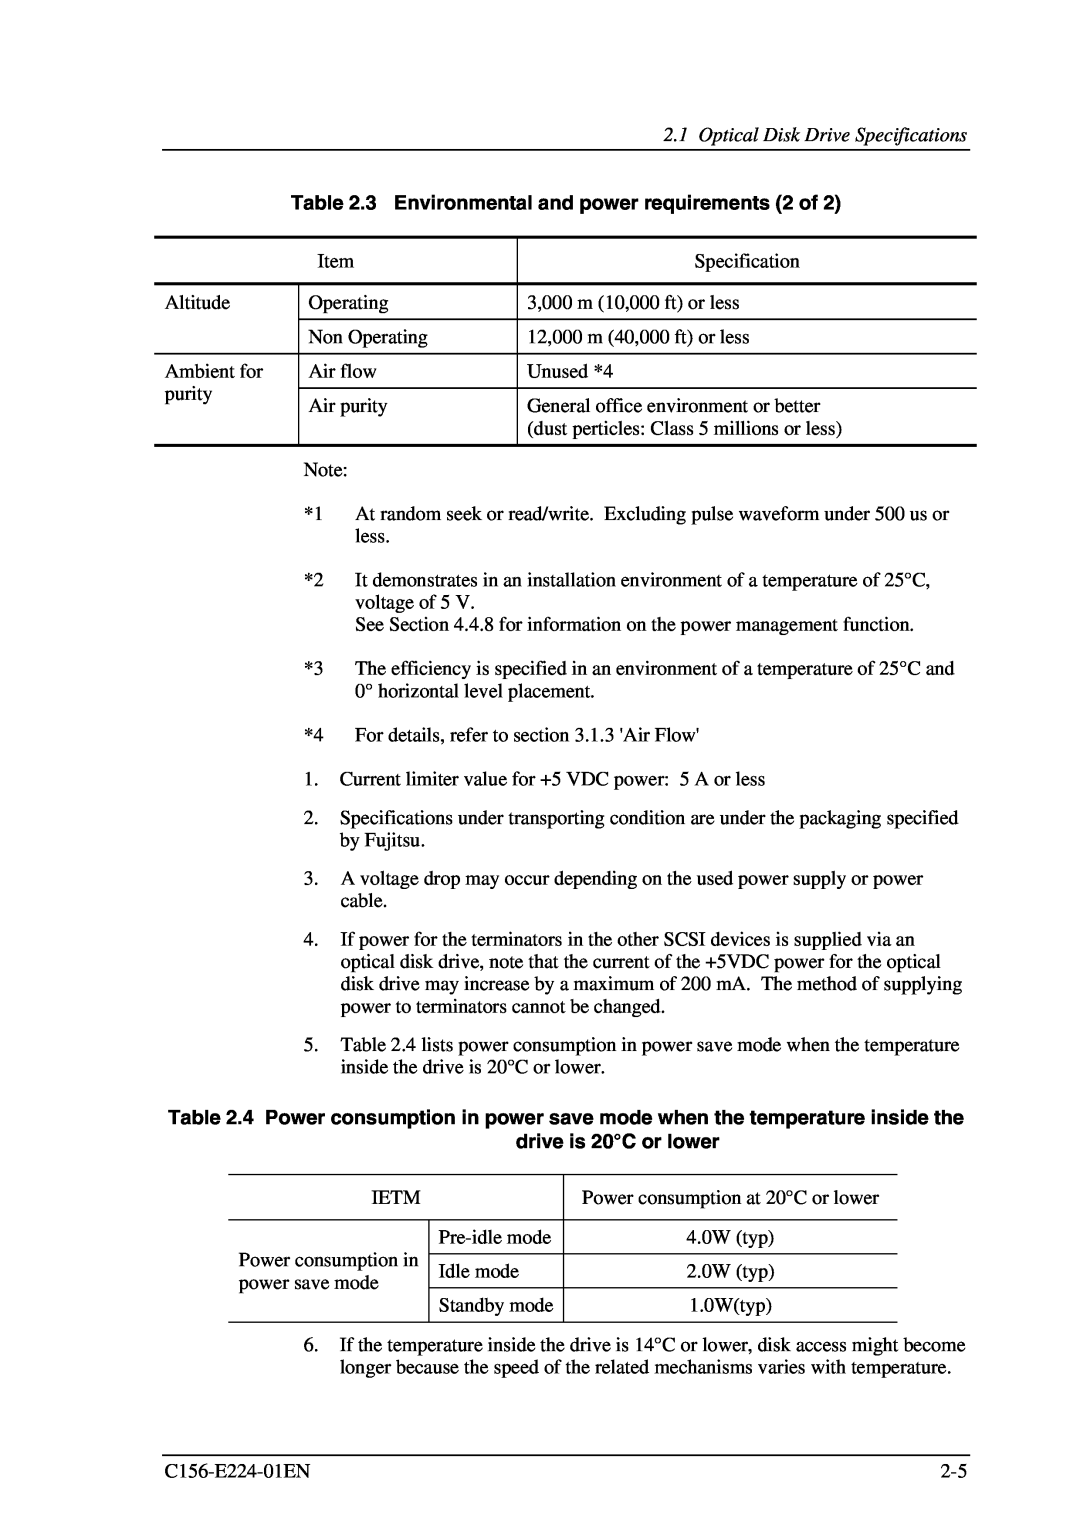 Fujitsu MCJ3230SS manual 3 Environmental and power requirements 2 of 